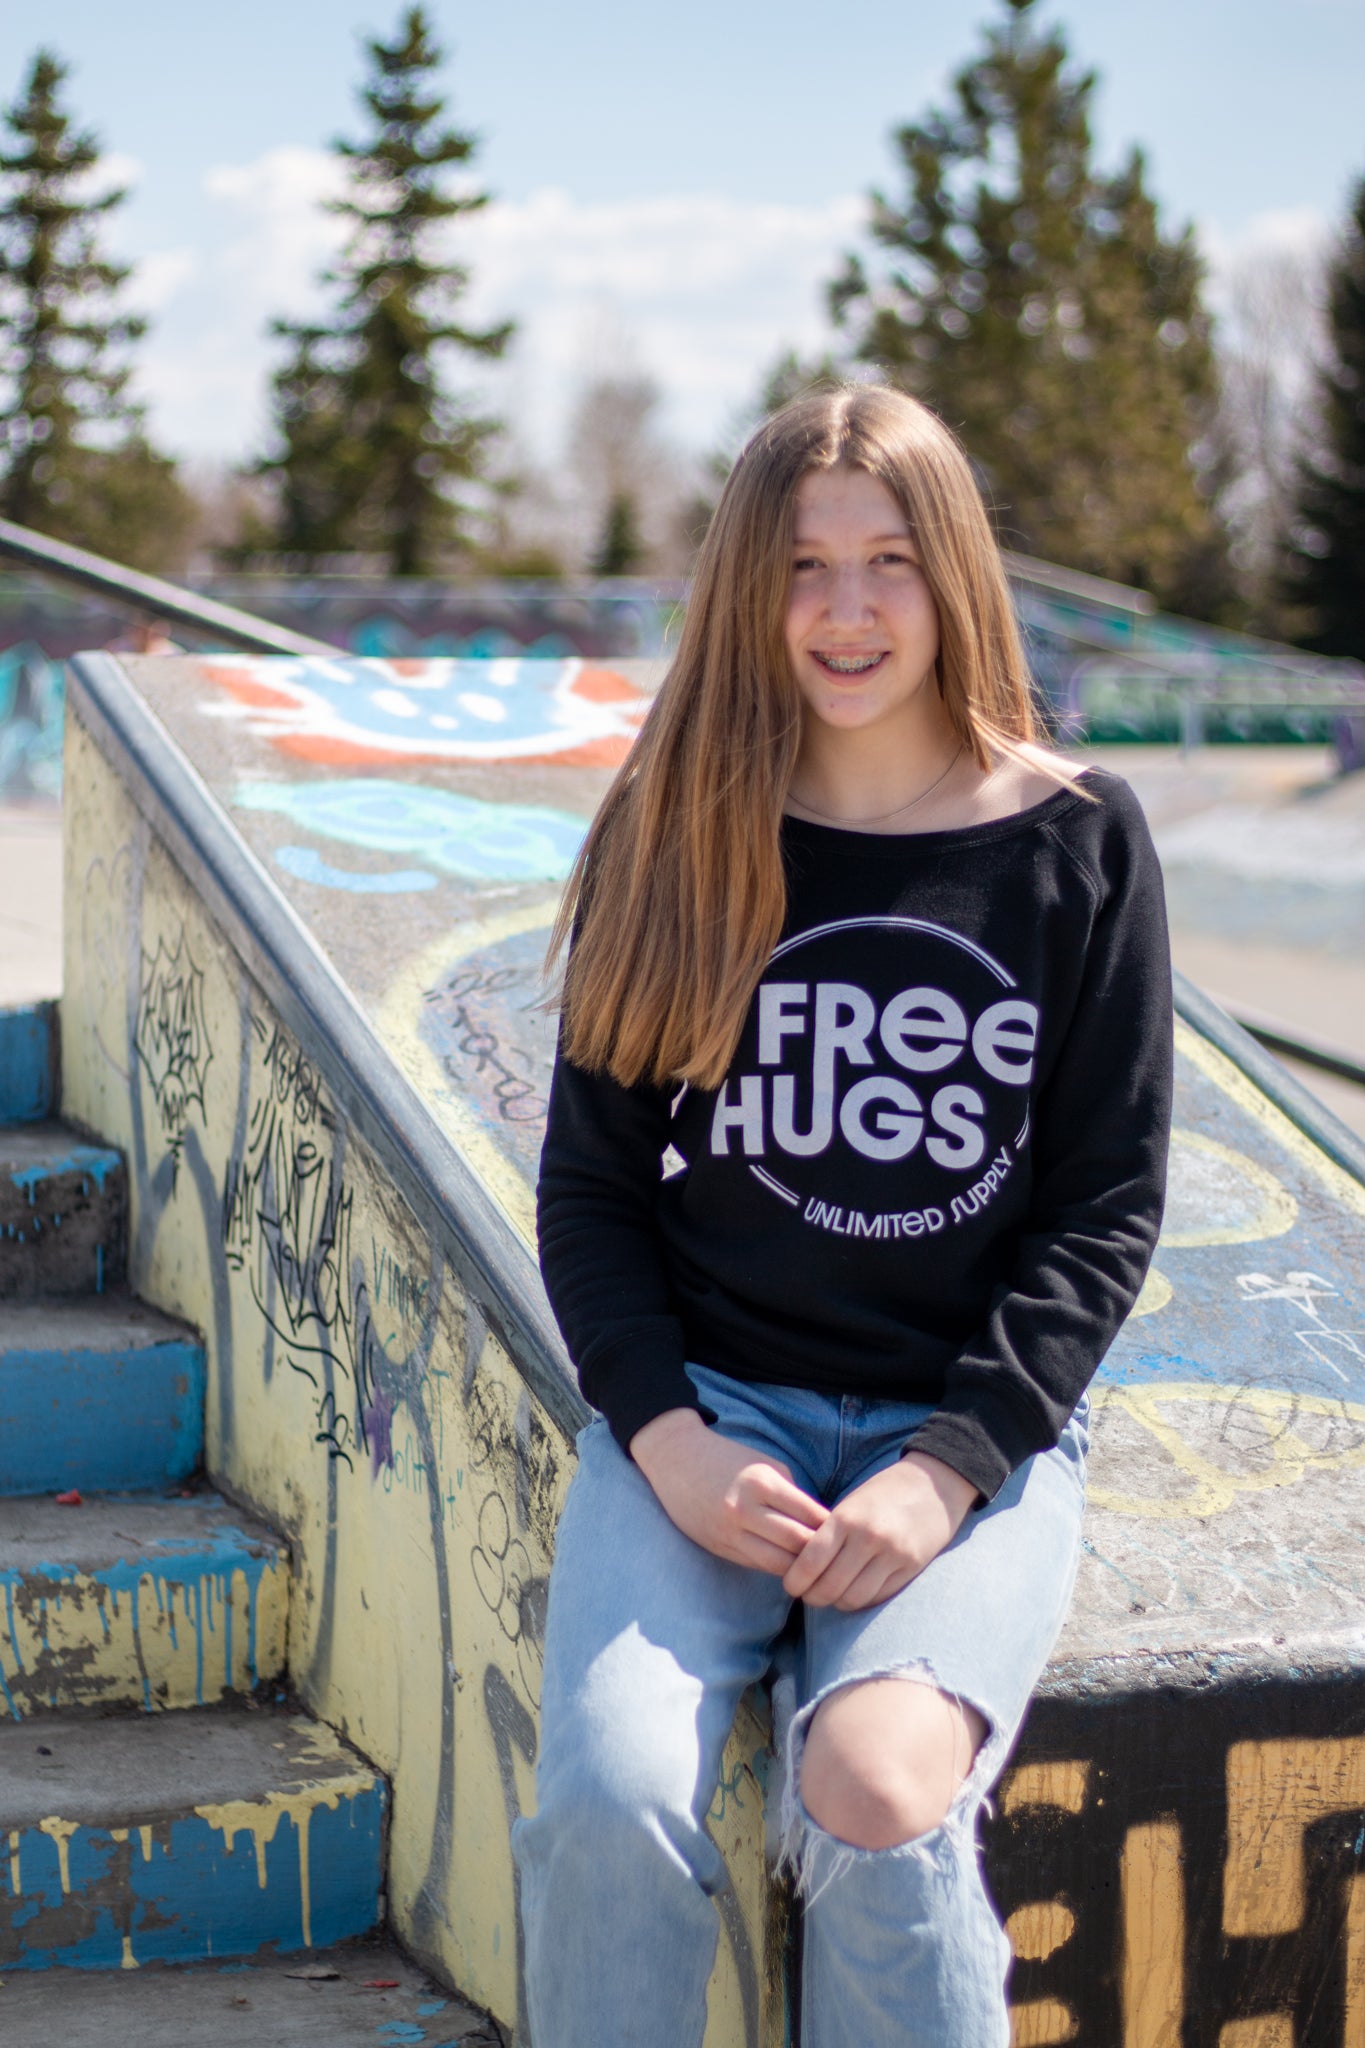 Free Hugs Womens Wide Neck Sweatshirt